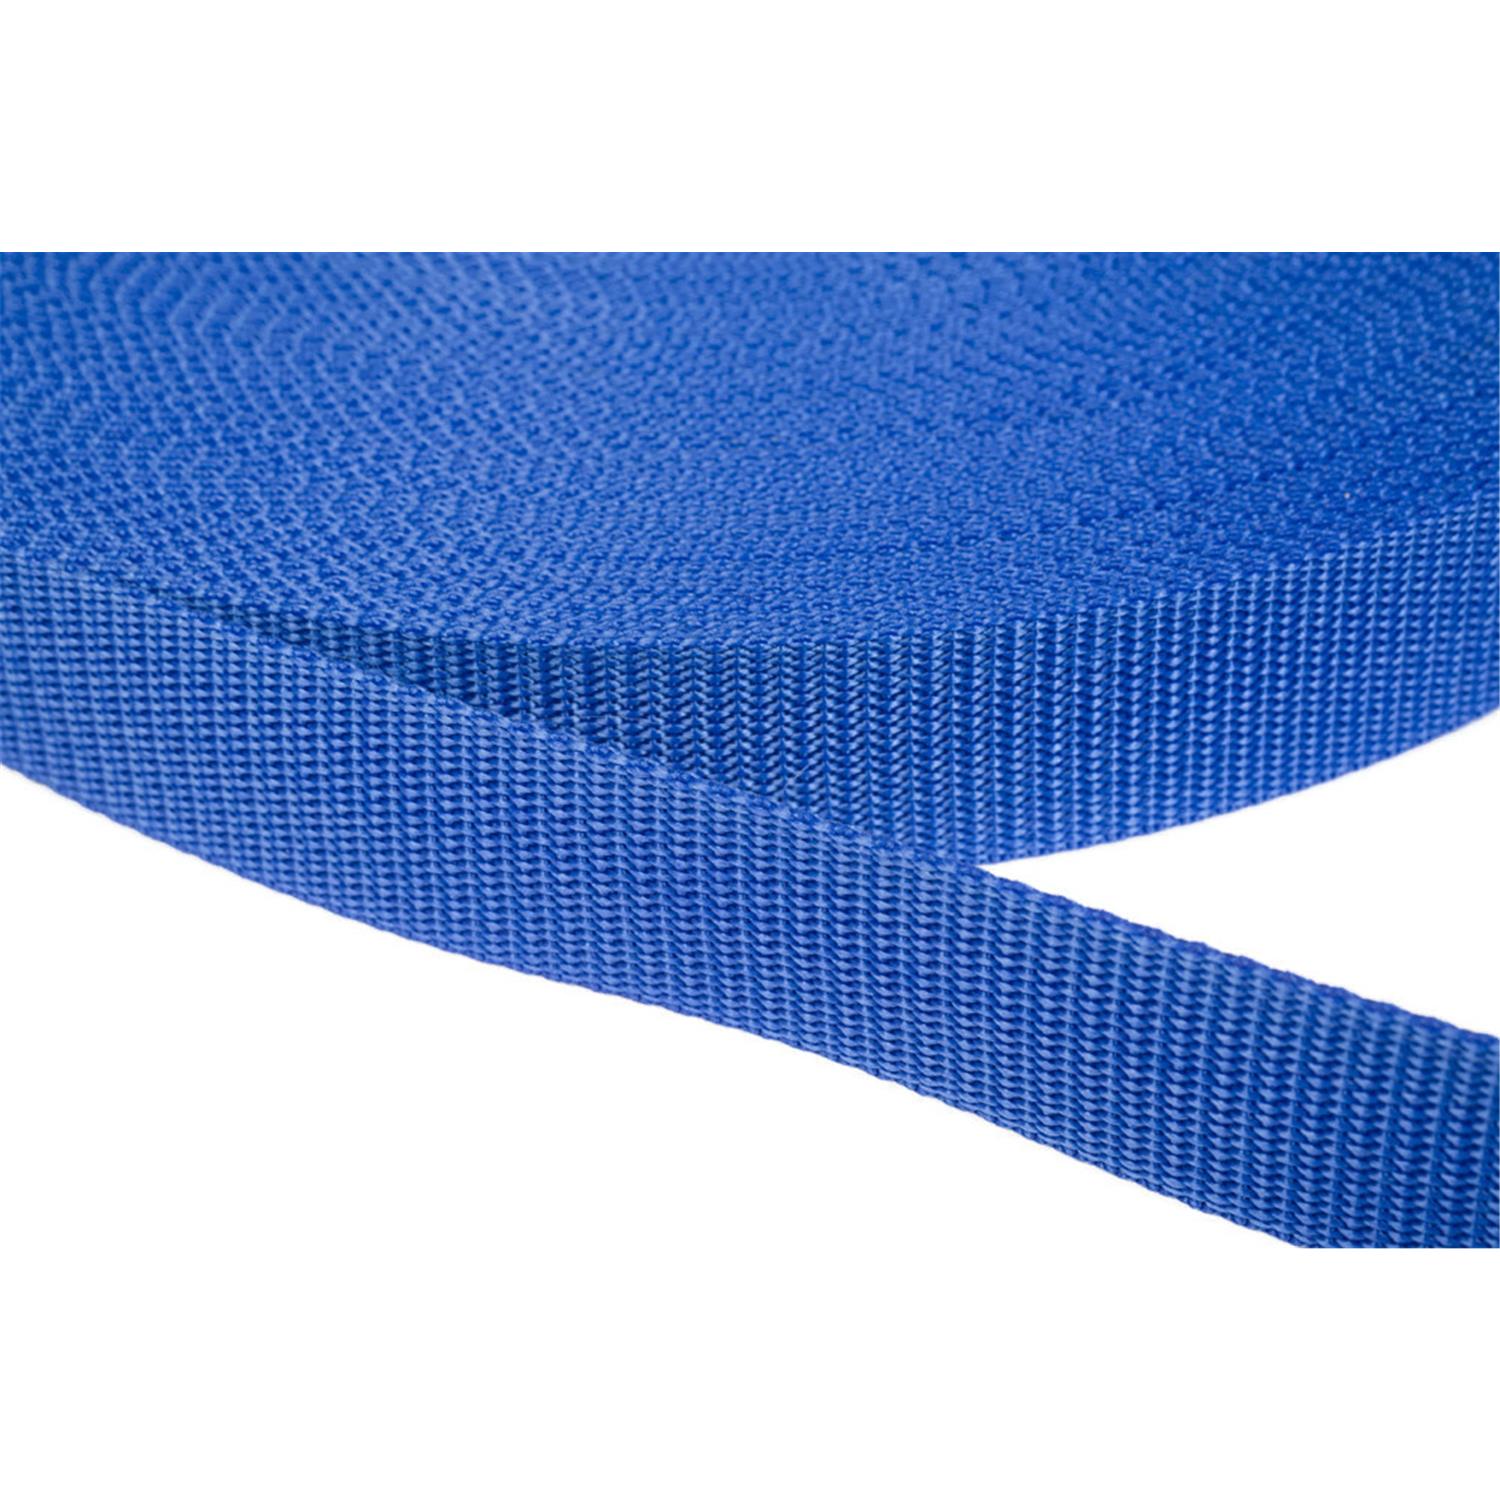 Gurtband 40mm breit aus Polypropylen in 41 Farben 26 - royalblau 12 Meter